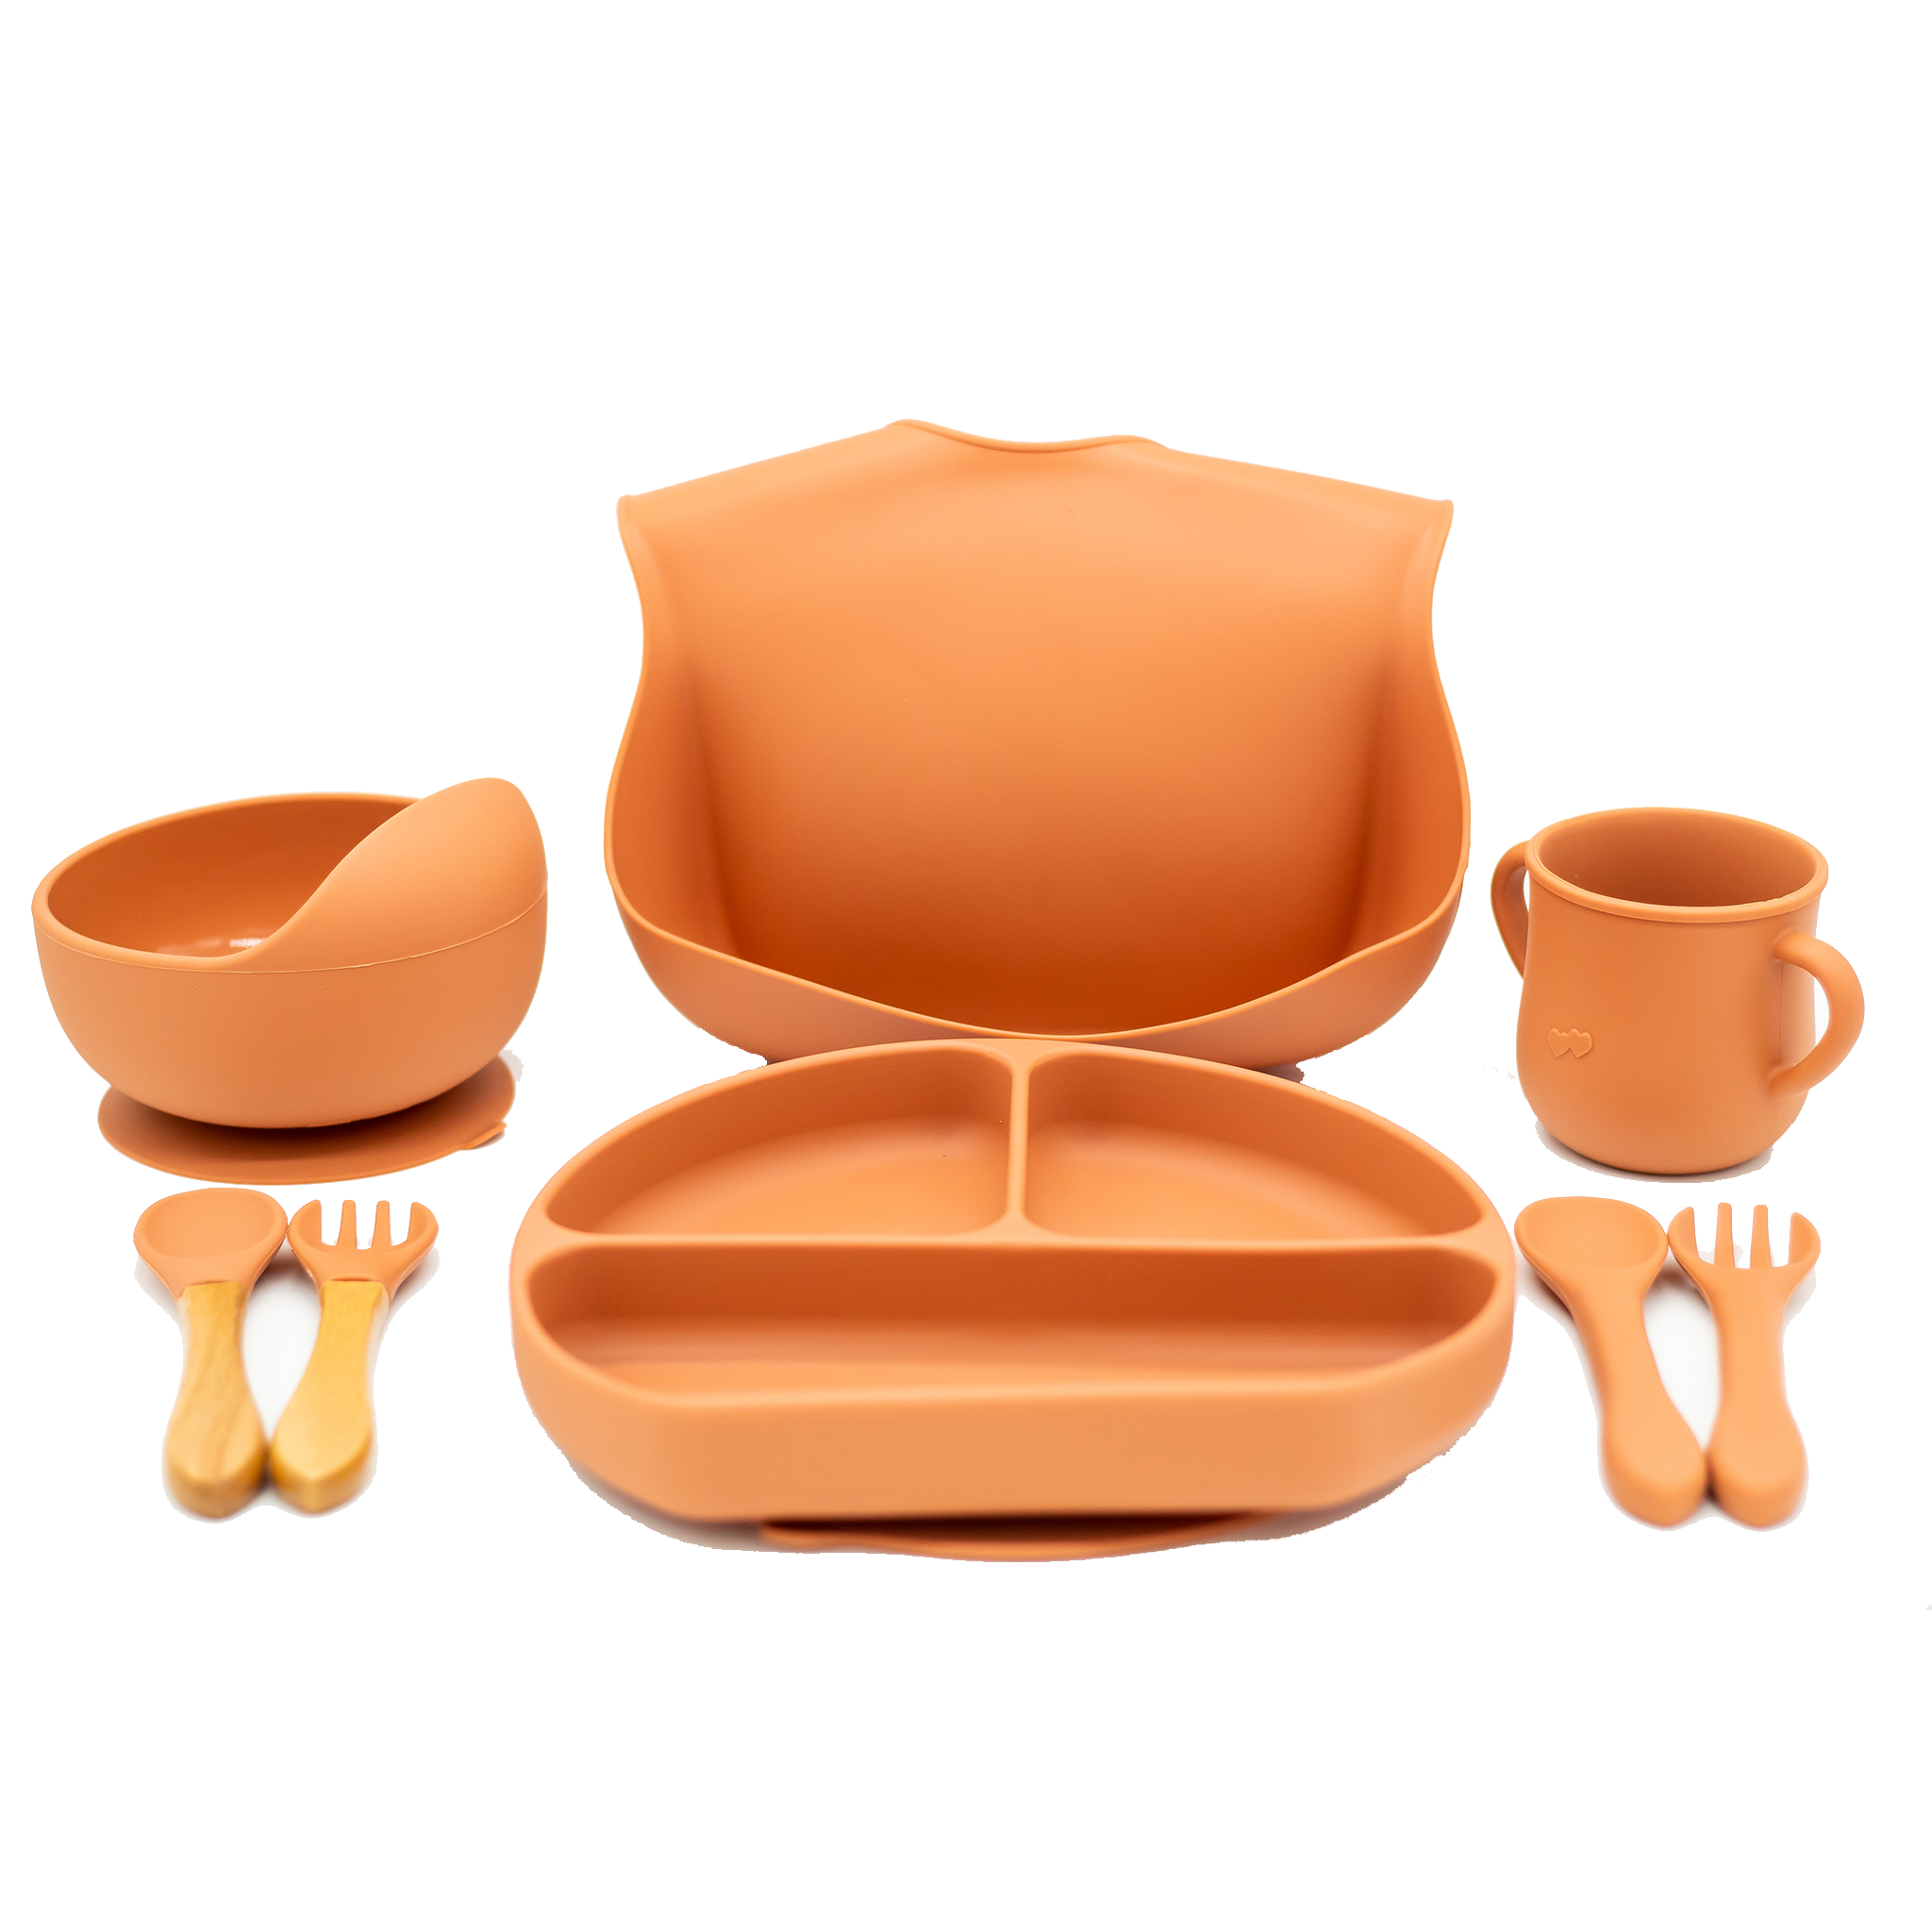 Toddler Silicone Feeding Set - Terracotta